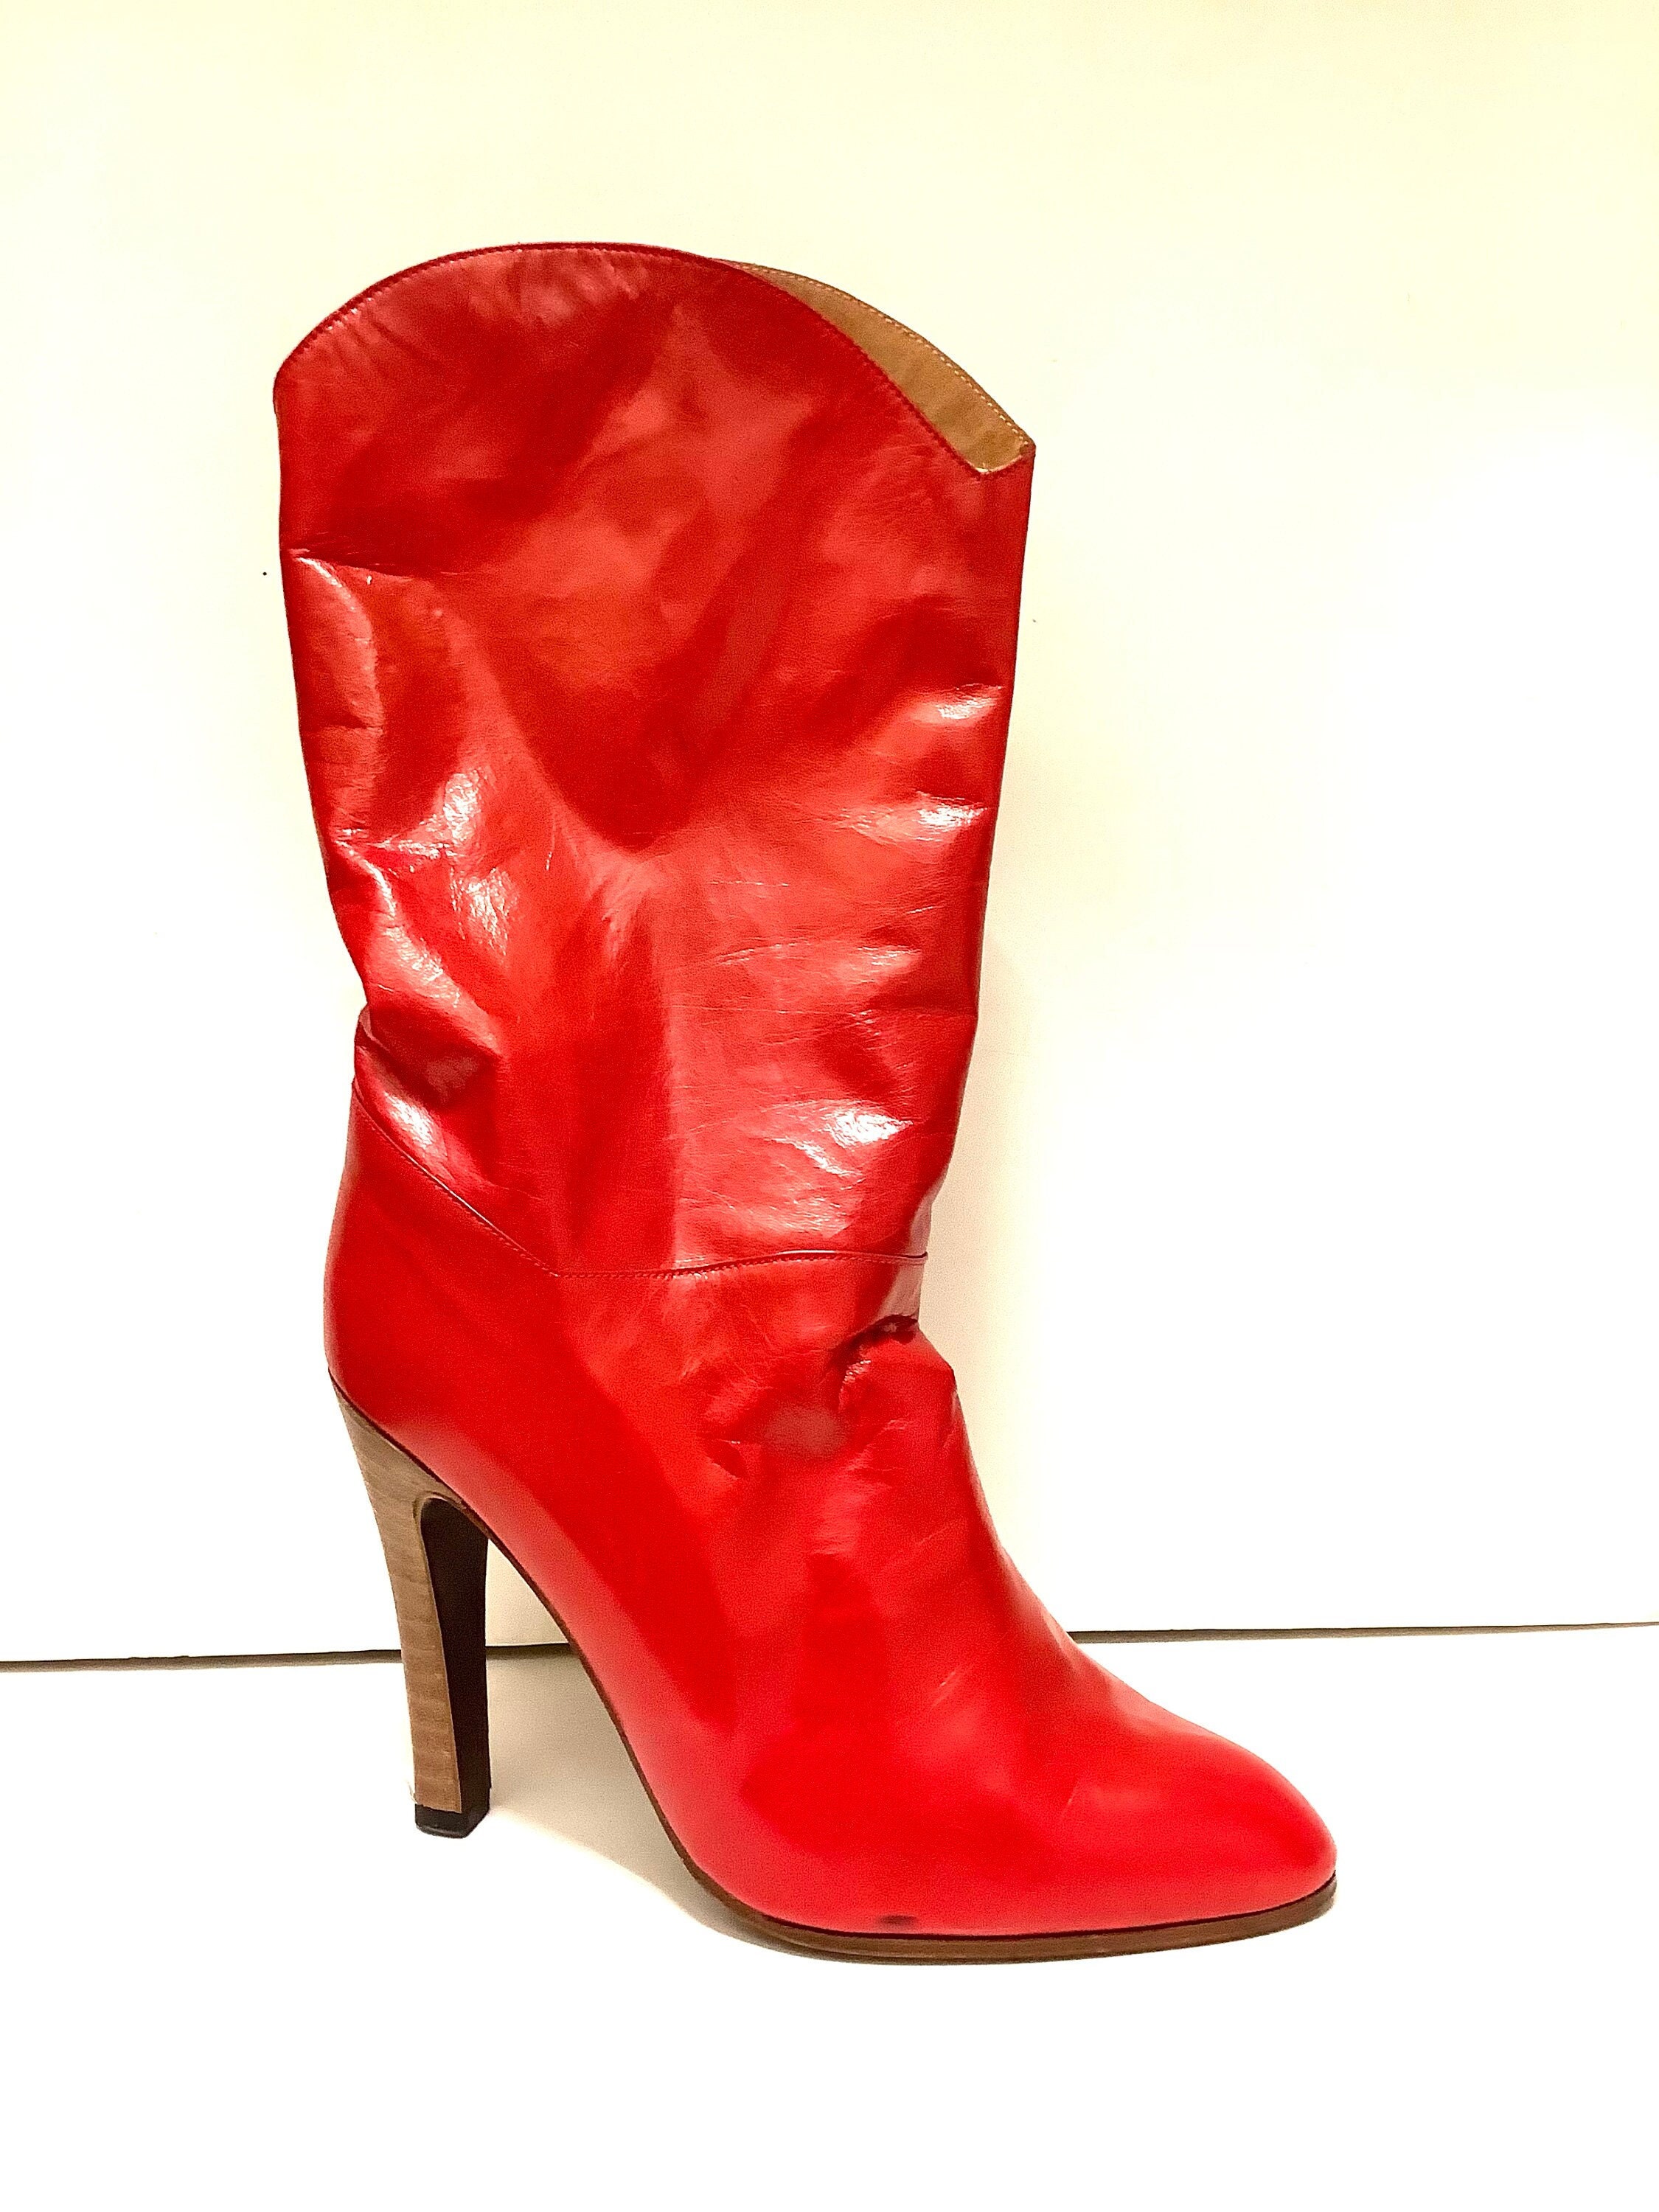 Chaussures Chaussures femme Bottes Bottes souples Vintage boots  en cuir très souple rouge vermillon/fabrication française/talon hauts/taille 38/UK 6/US 8 